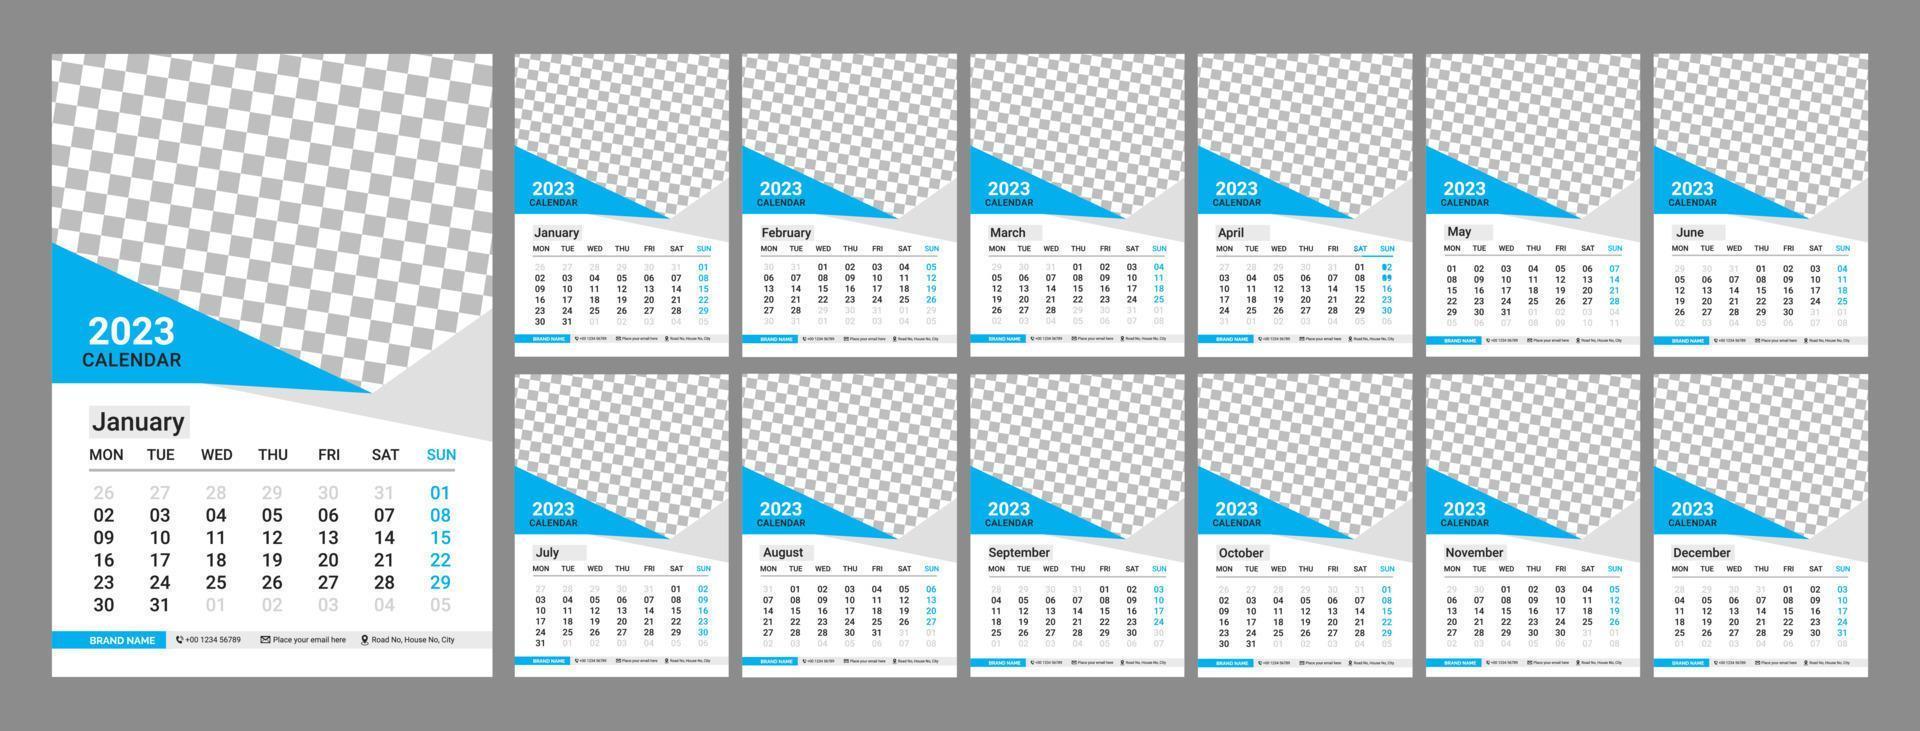 calendário de parede desing 2023. calendário mensal 2023. 12 meses. modelo de página de calendário editável vetor